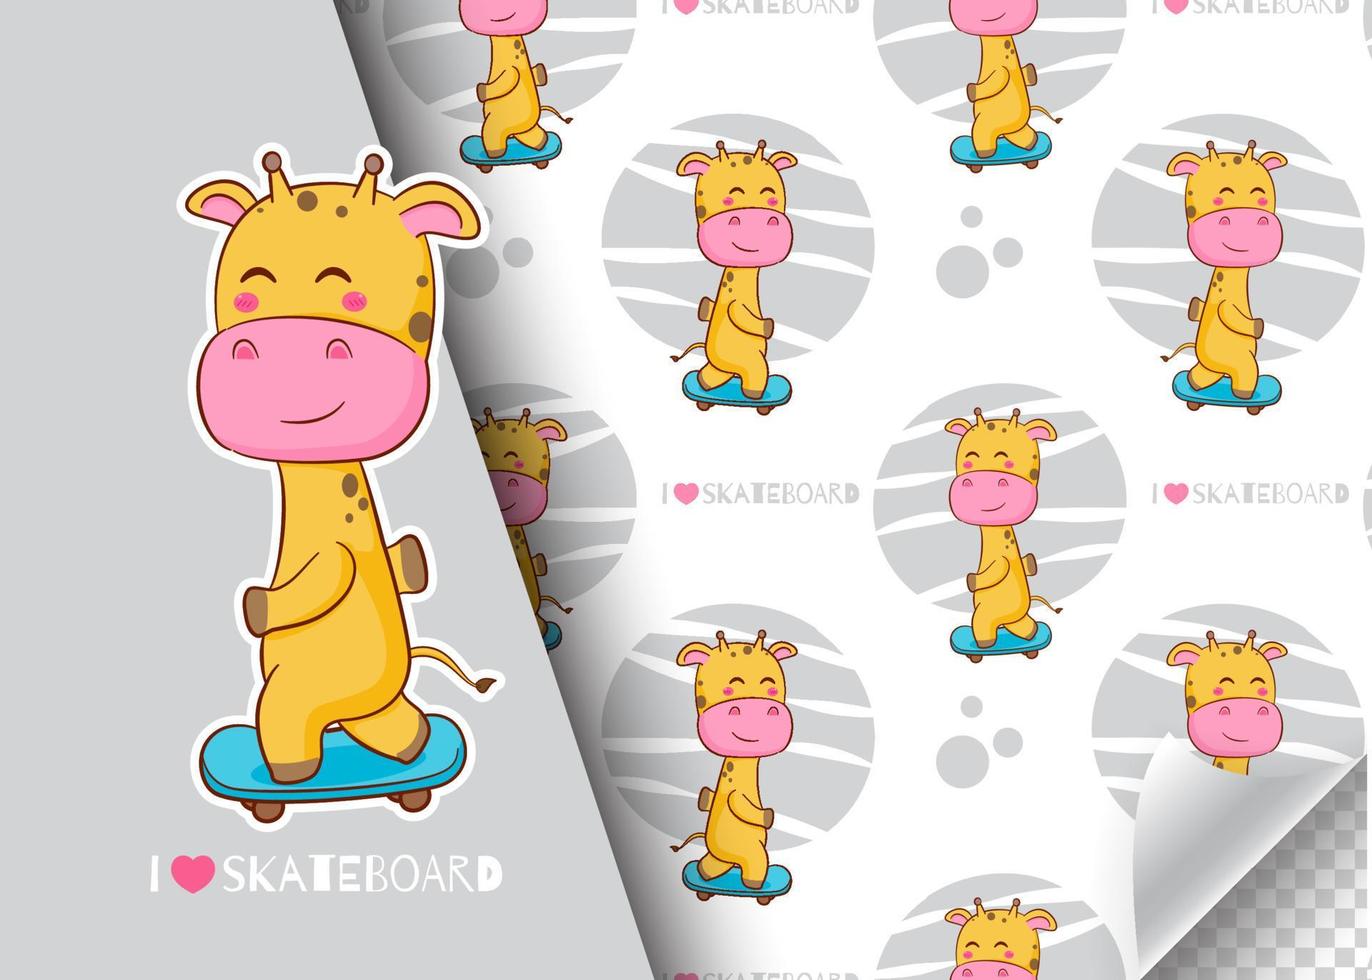 personaggio giraffa simpatico cartone animato che gioca a skateboard. carta per bambini e motivo di sfondo senza soluzione di continuità. illustrazione vettoriale di design disegnato a mano.